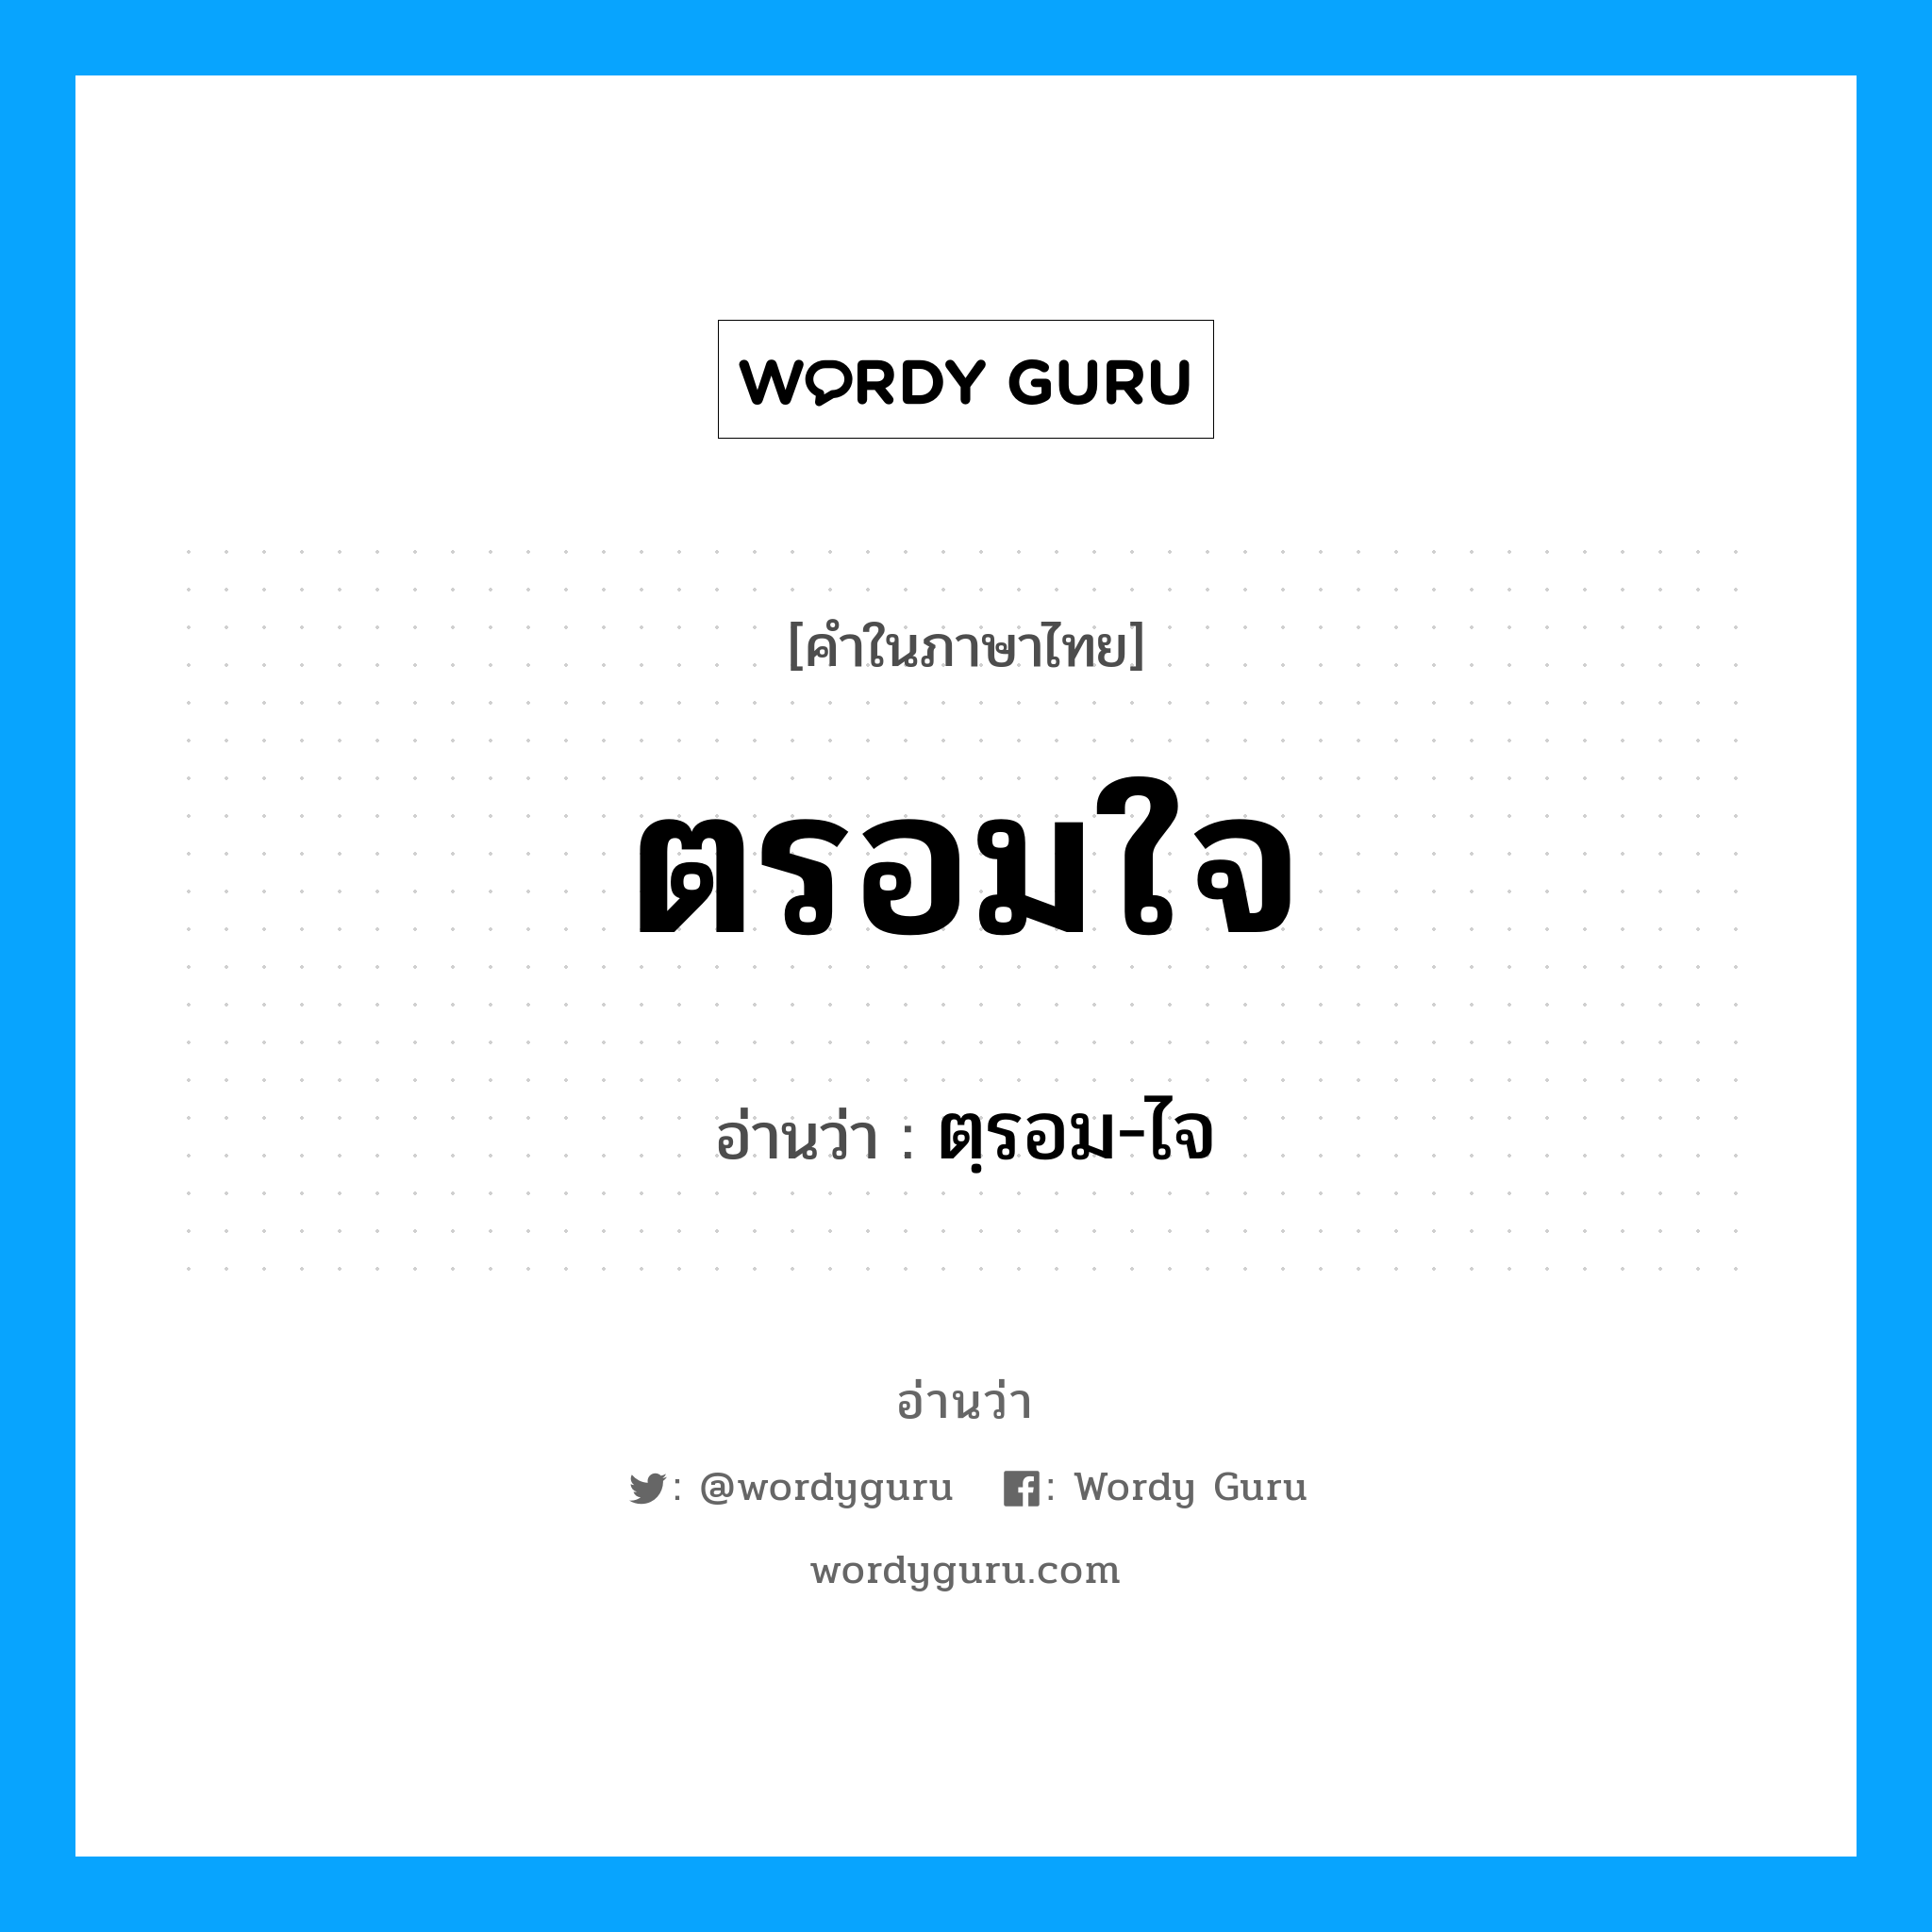 ตฺรอม-ไจ เป็นคำอ่านของคำไหน?, คำในภาษาไทย ตฺรอม-ไจ อ่านว่า ตรอมใจ